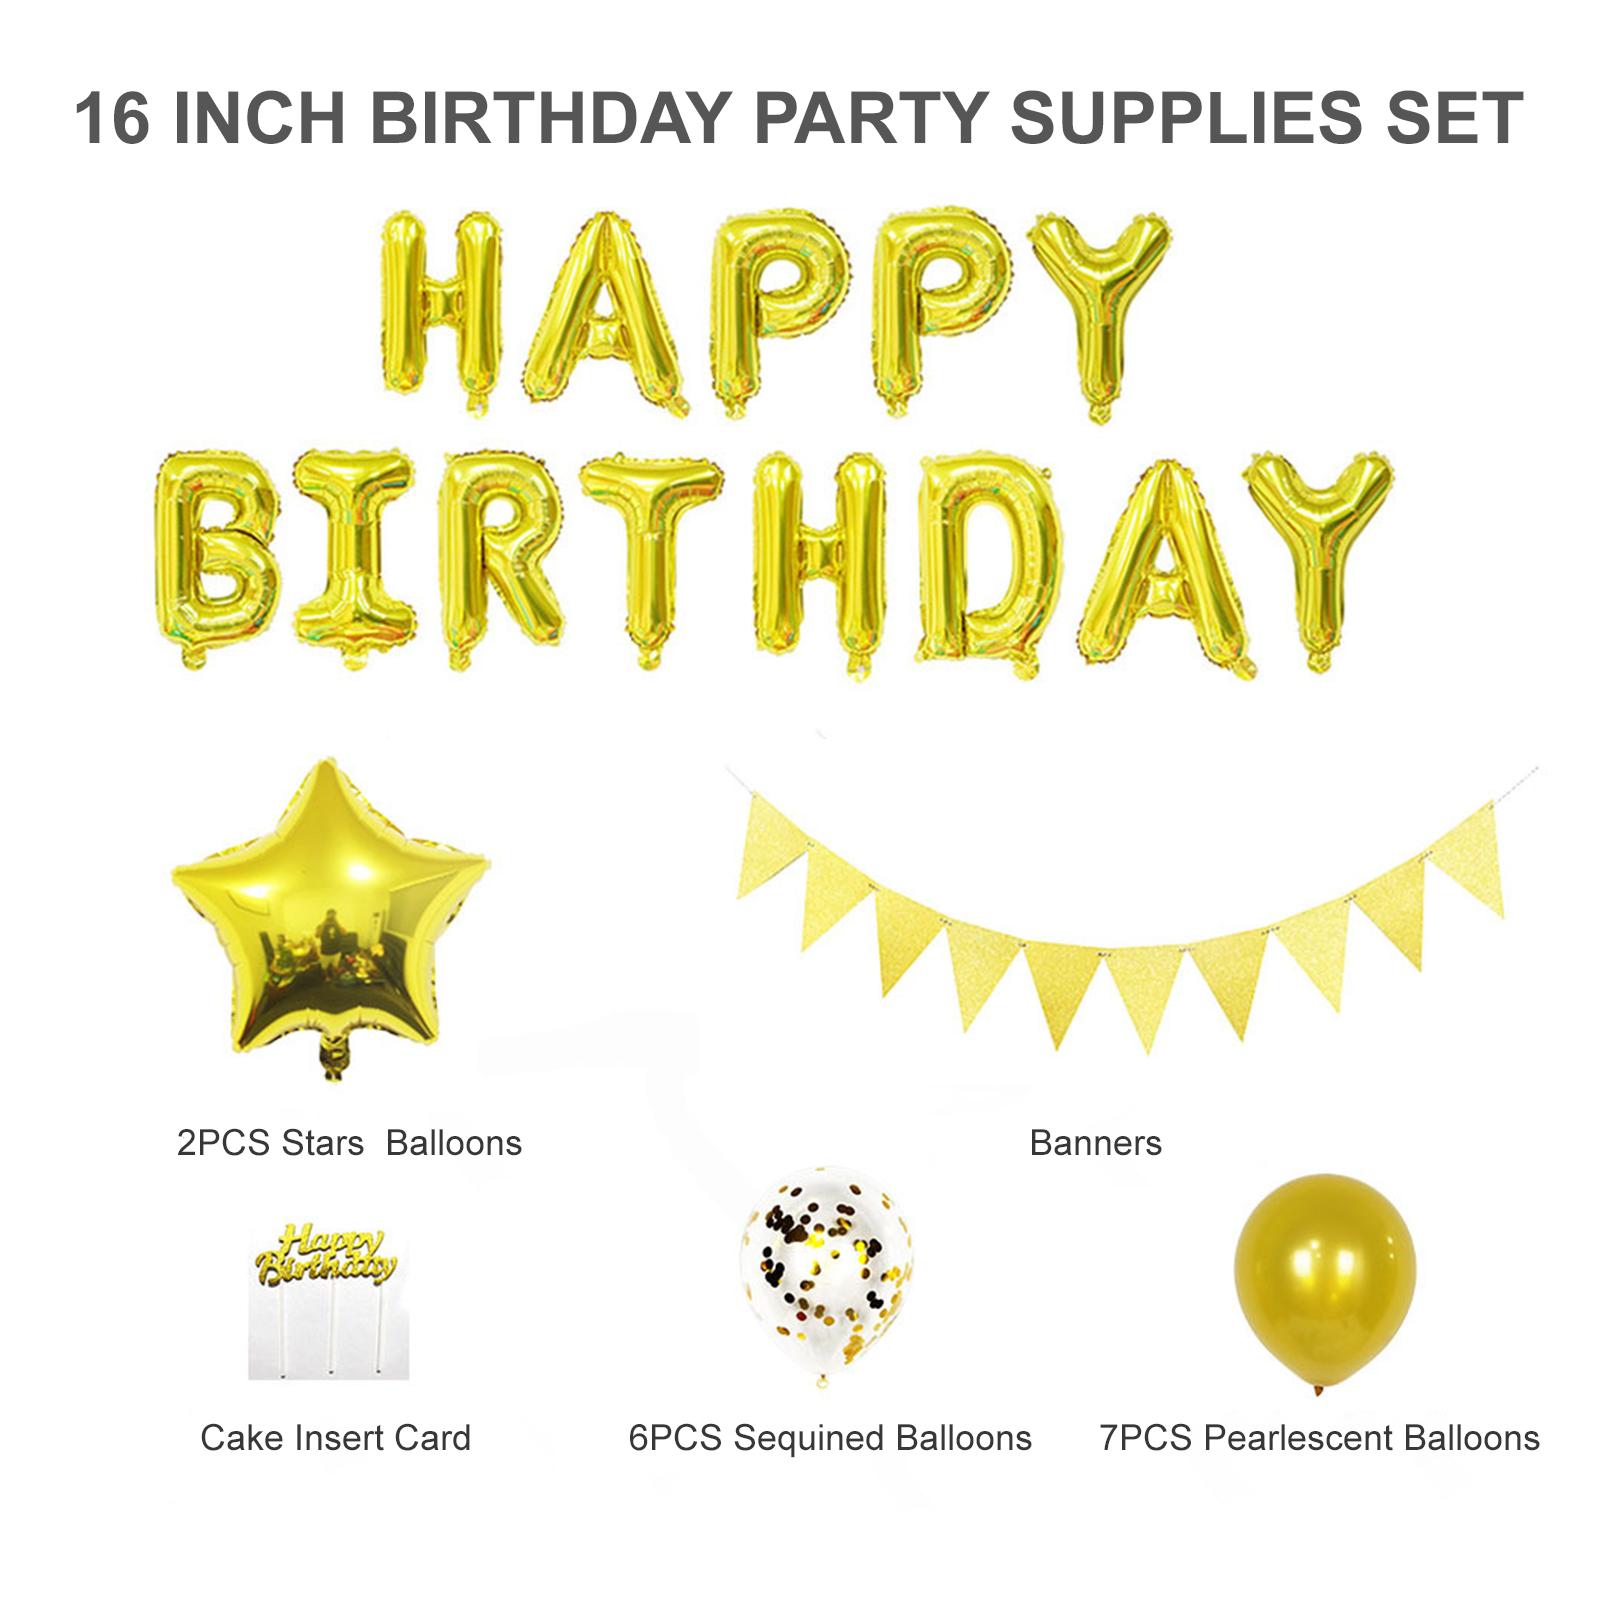 1 Set đồ dùng trang trí cho tiệc sinh nhật